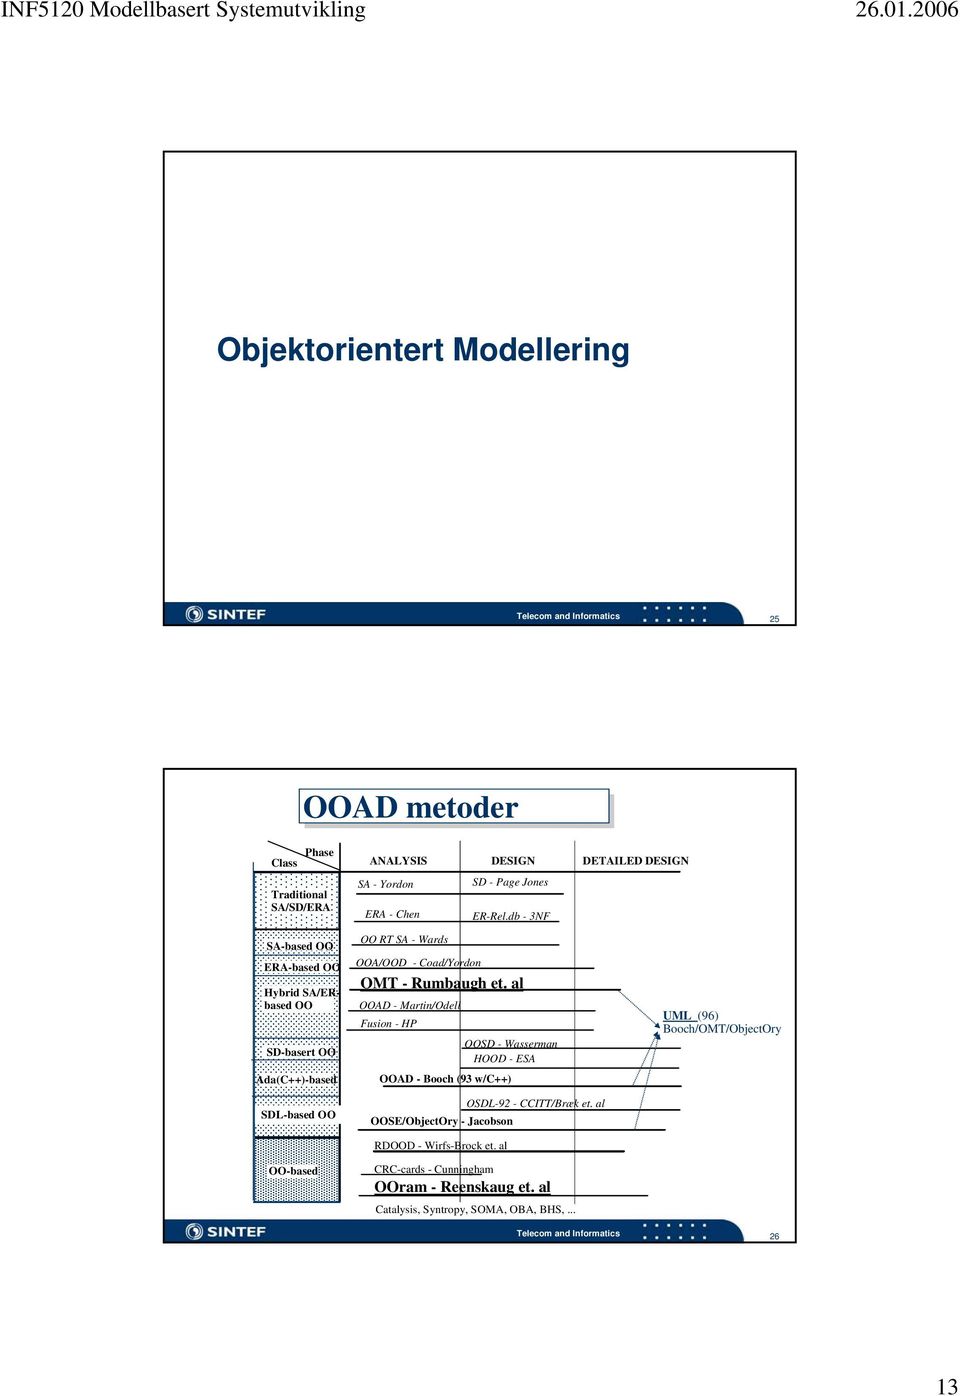 db - 3NF SA-based OO ERA-based OO Hybrid SA/ERbased OO SD-basert OO Ada(C++)-based SDL-based OO OO-based OO RT SA - Wards OOA/OOD - Coad/Yordon OMT -